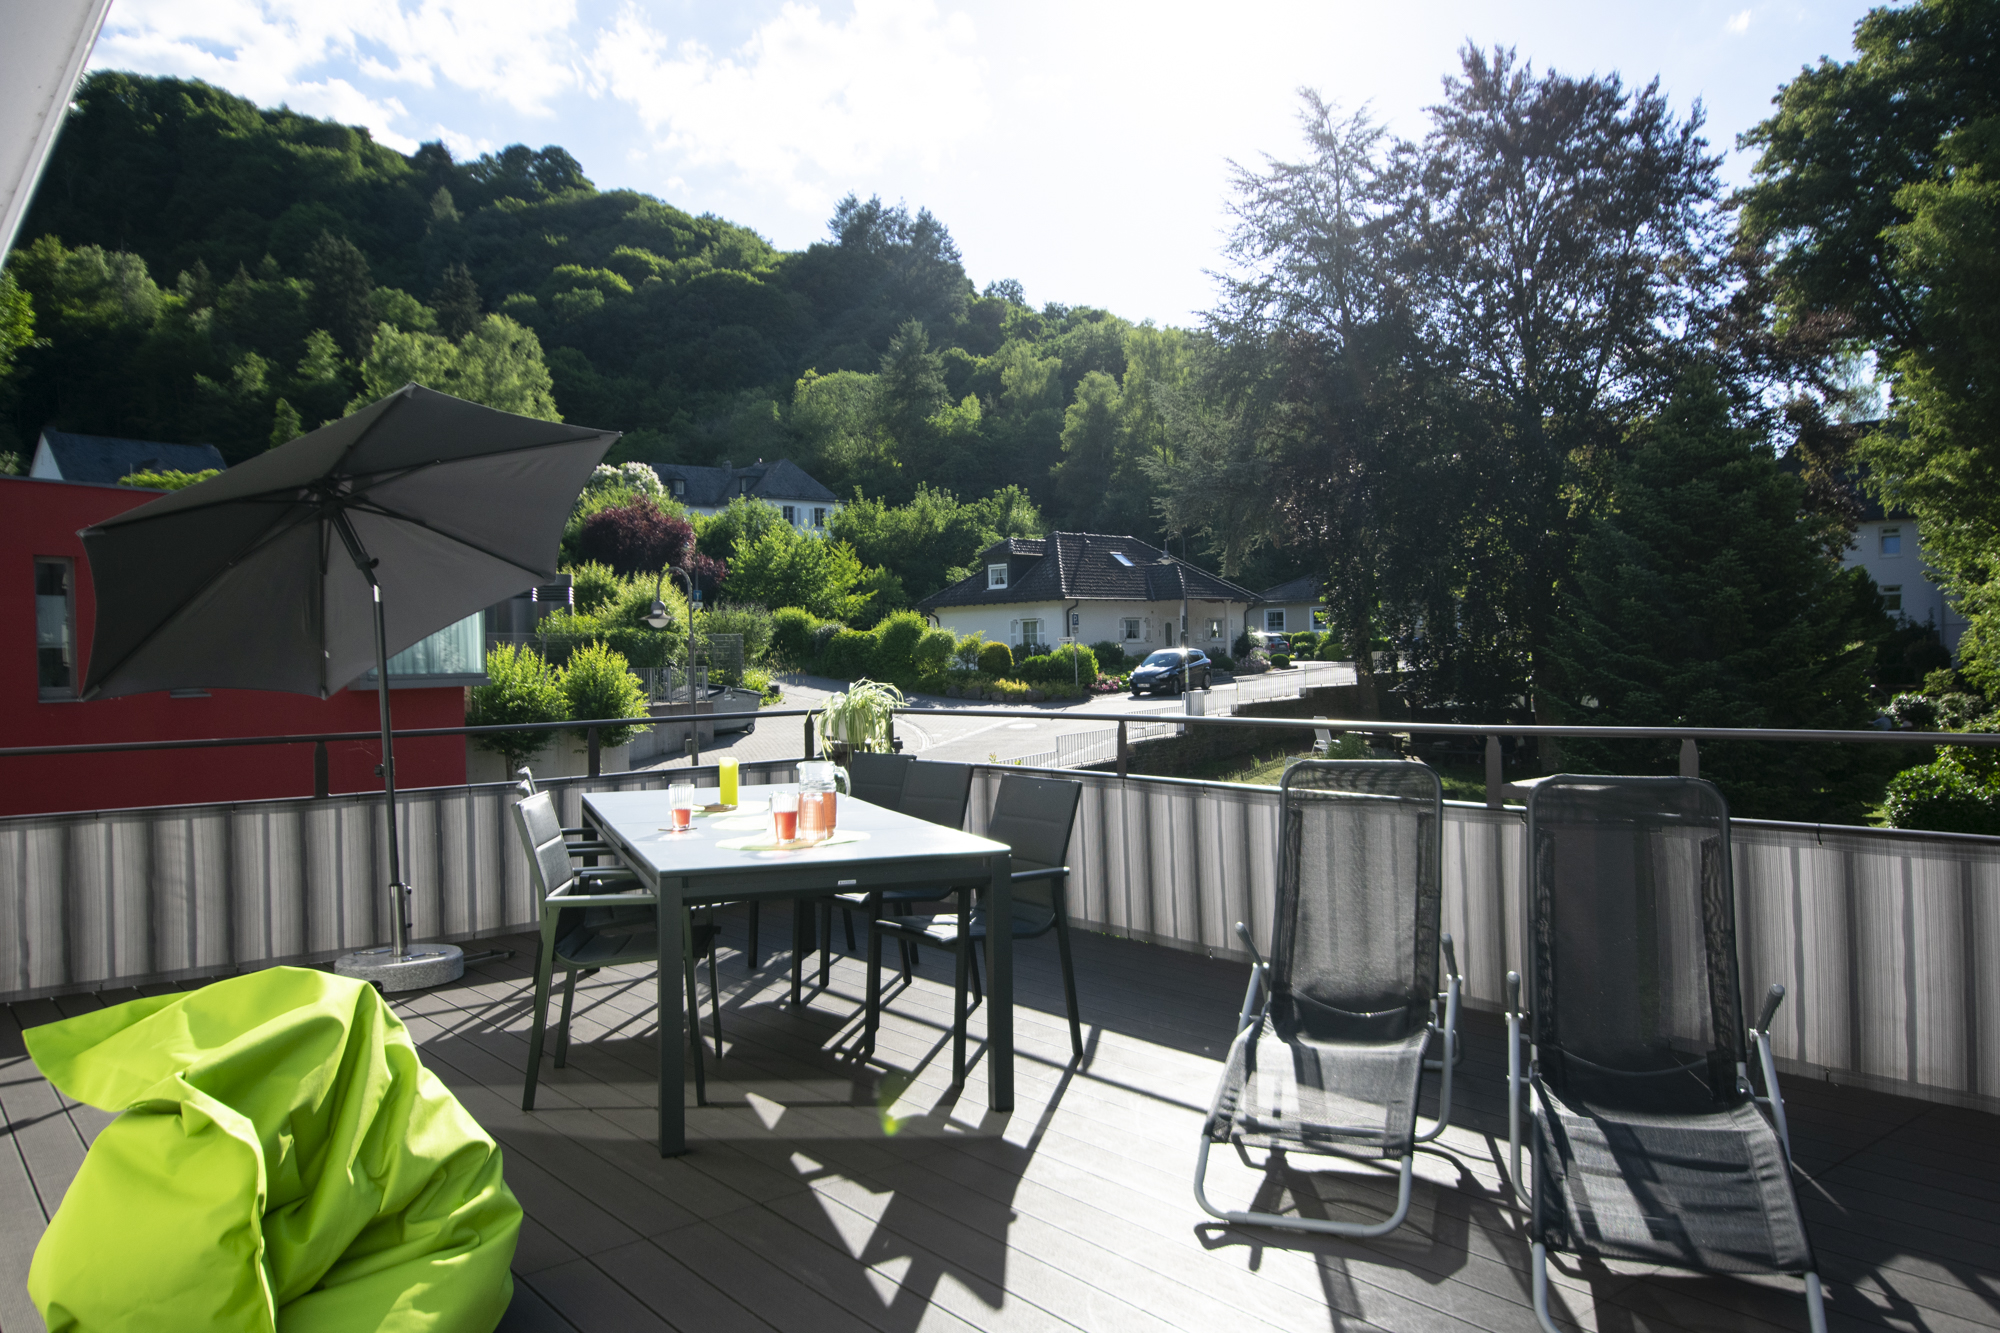 gruener sitzsack grsser tisch mit getraenken und liegestuehle auf einer terrasse